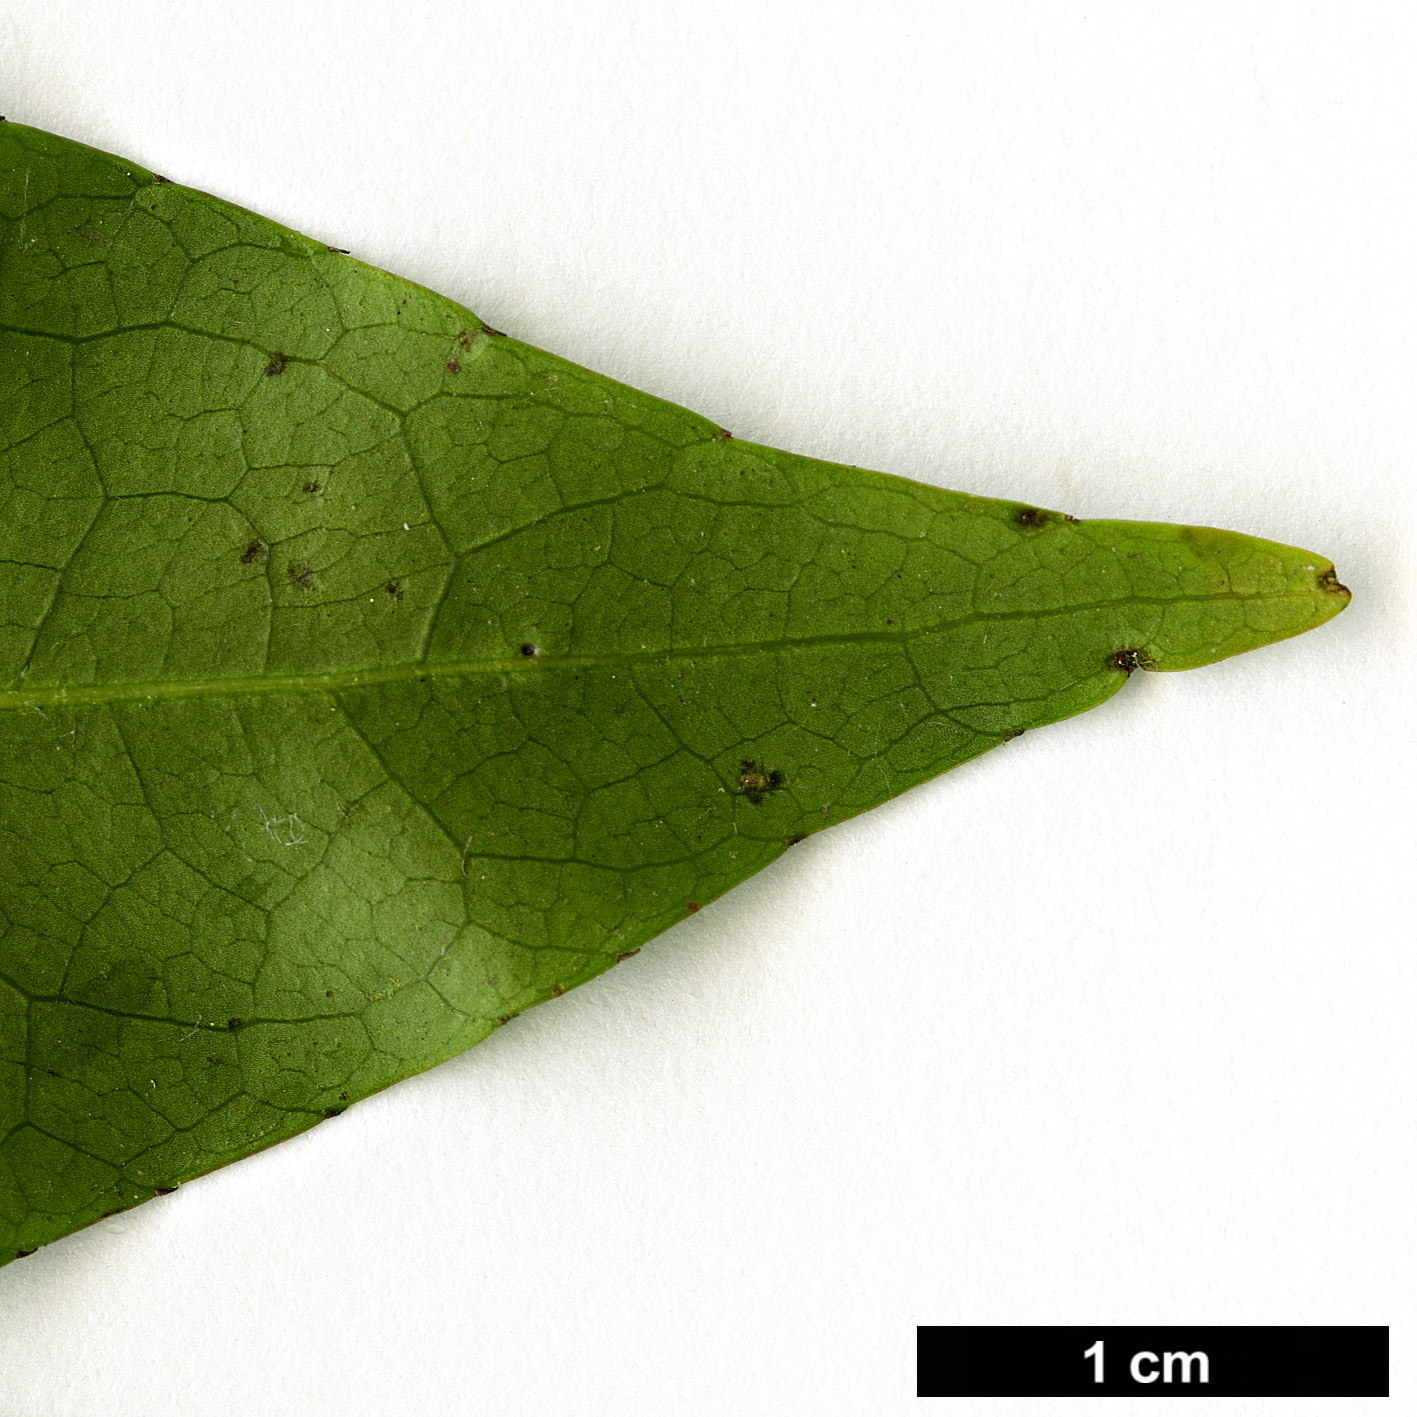 High resolution image: Family: Elaeocarpaceae - Genus: Elaeocarpus - Taxon: glabripetalus 